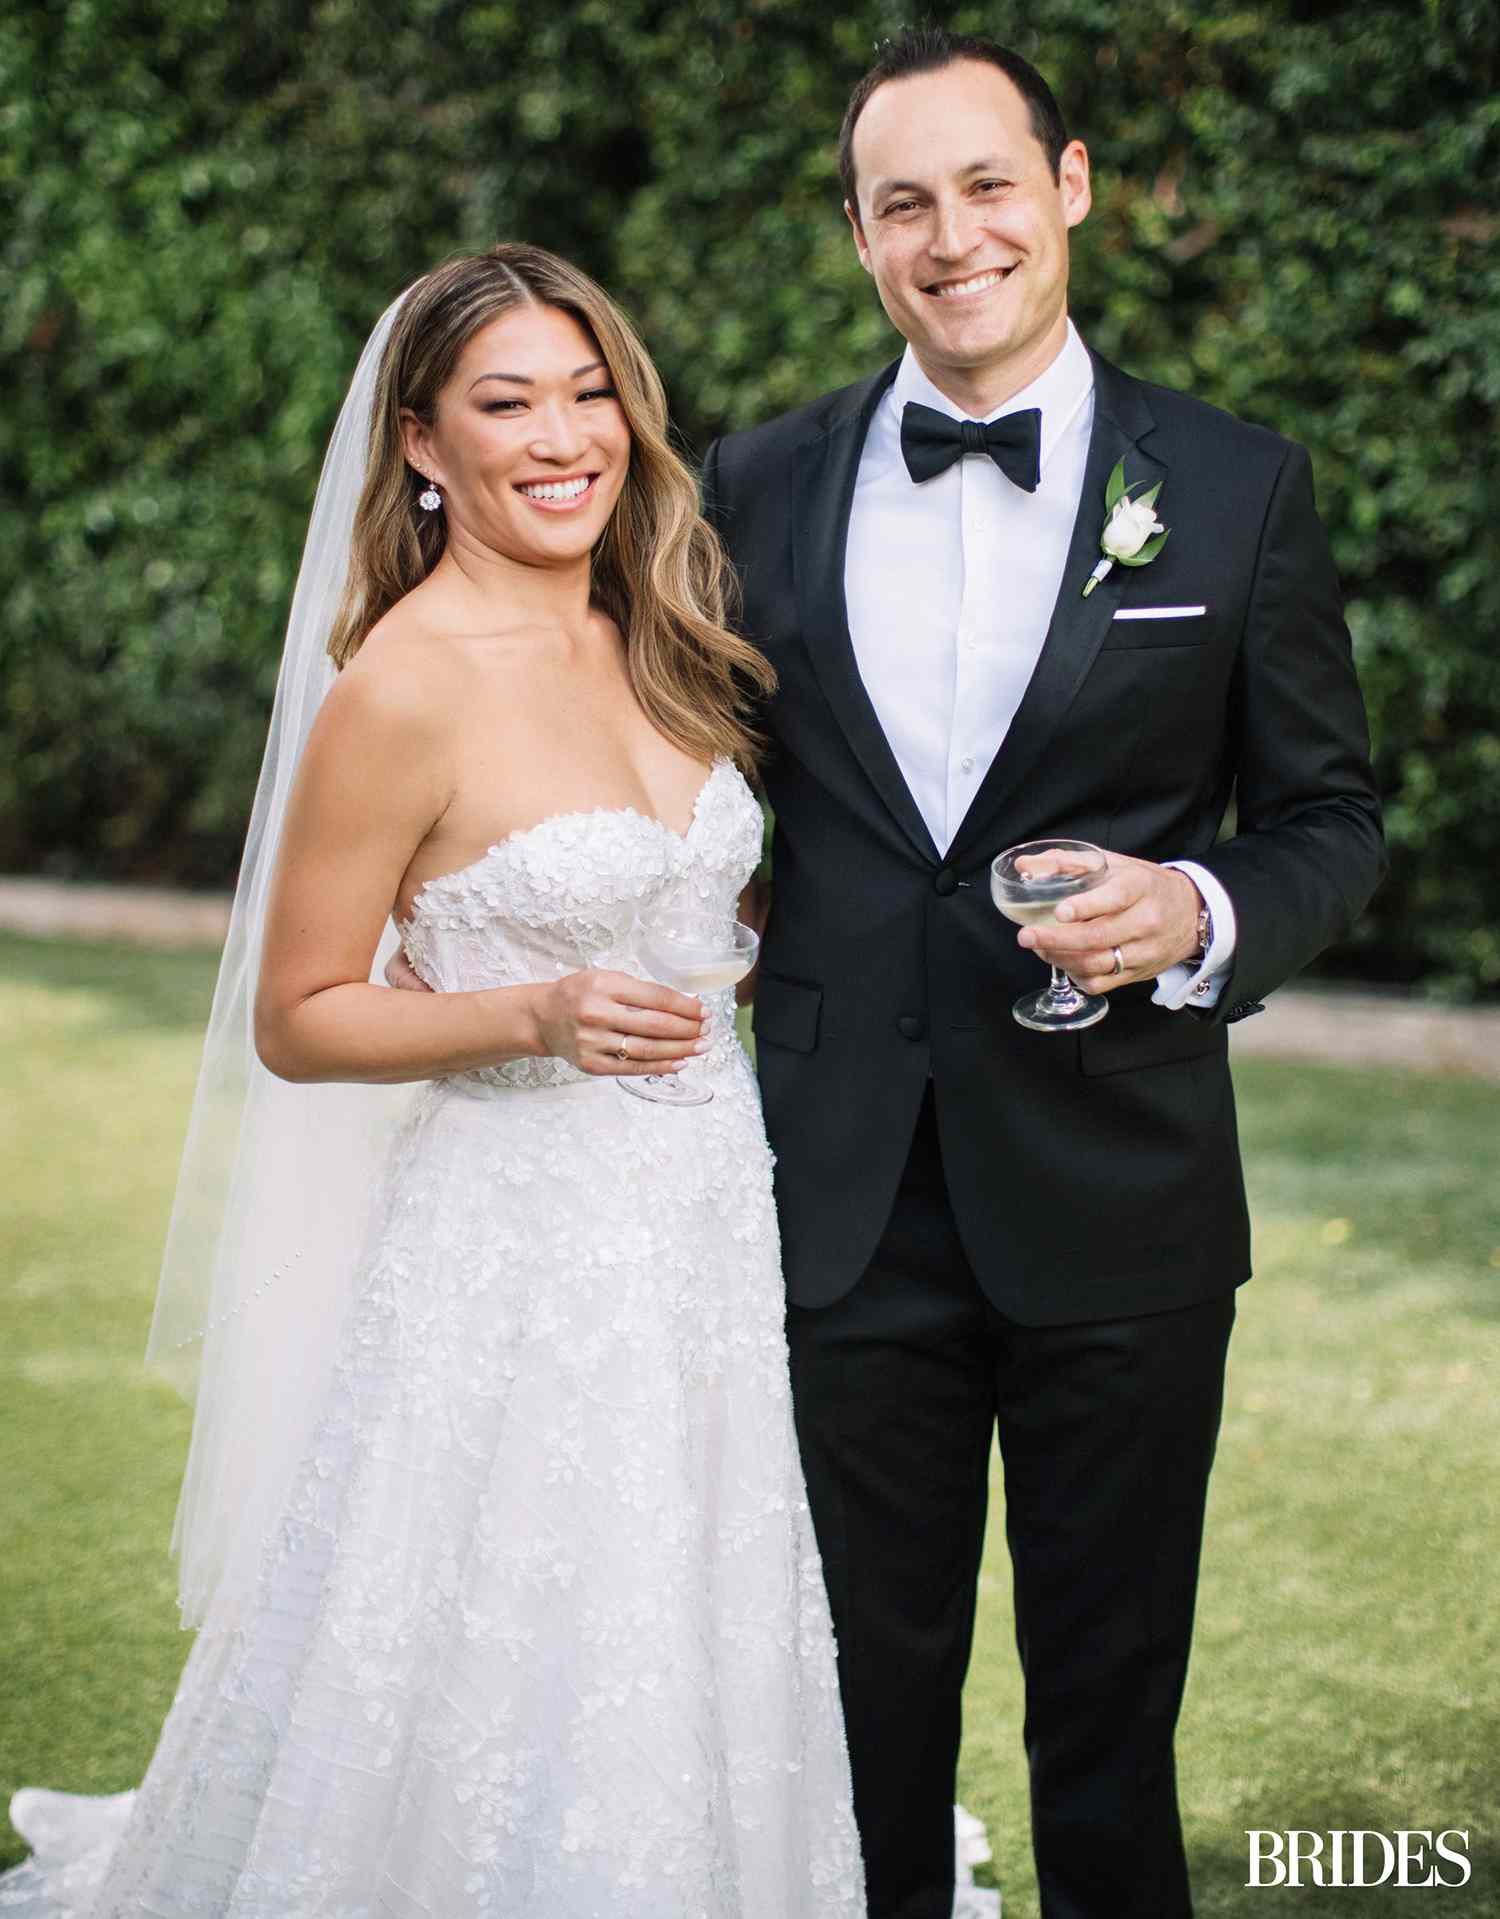 Jenna Ushkowitz and David Stanley’s Wedding